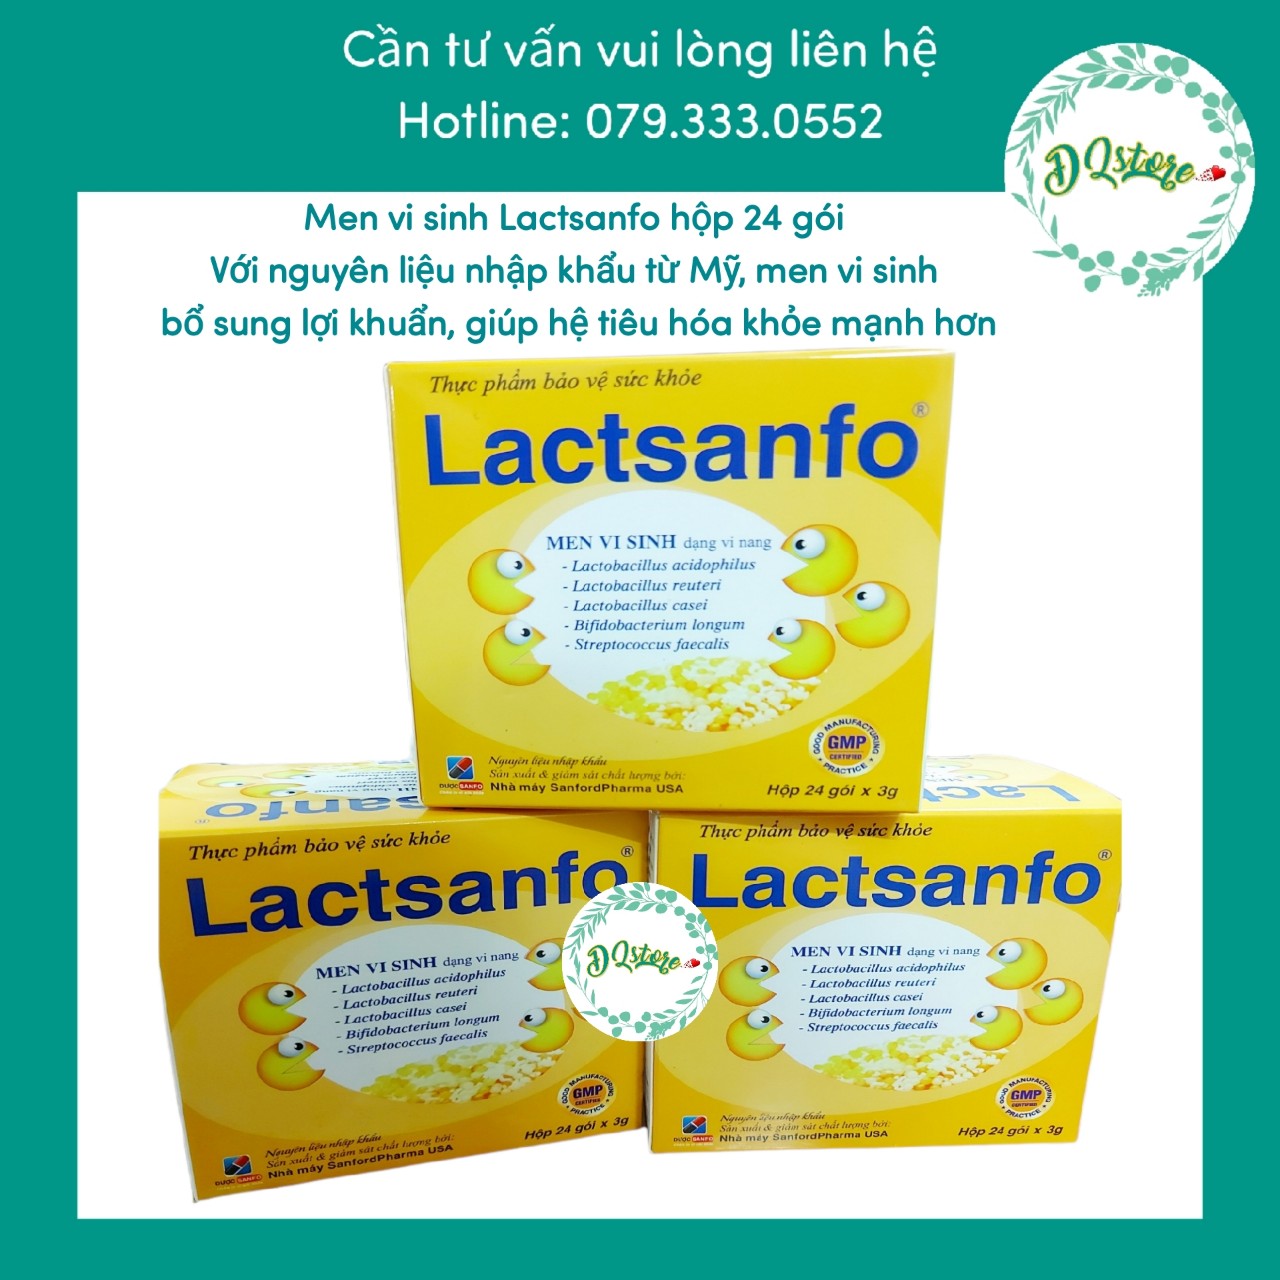 lactsanfo - men vi sinh dạng vi nang cho người rối loạn tiêu hóa